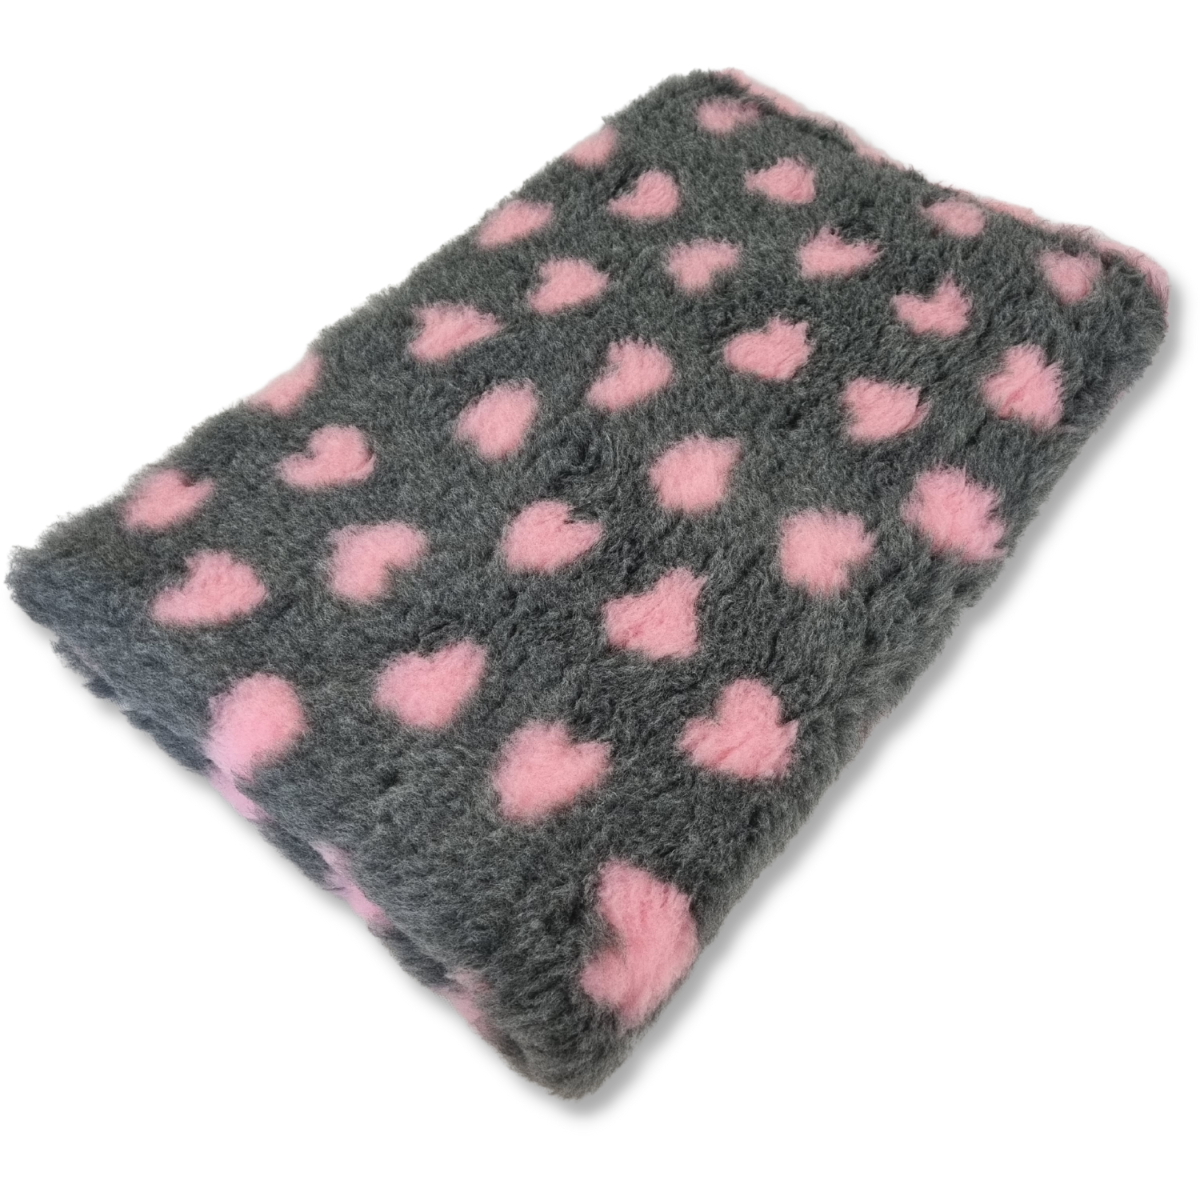 Vetbed grijs met roze hartjes - 100x75cm